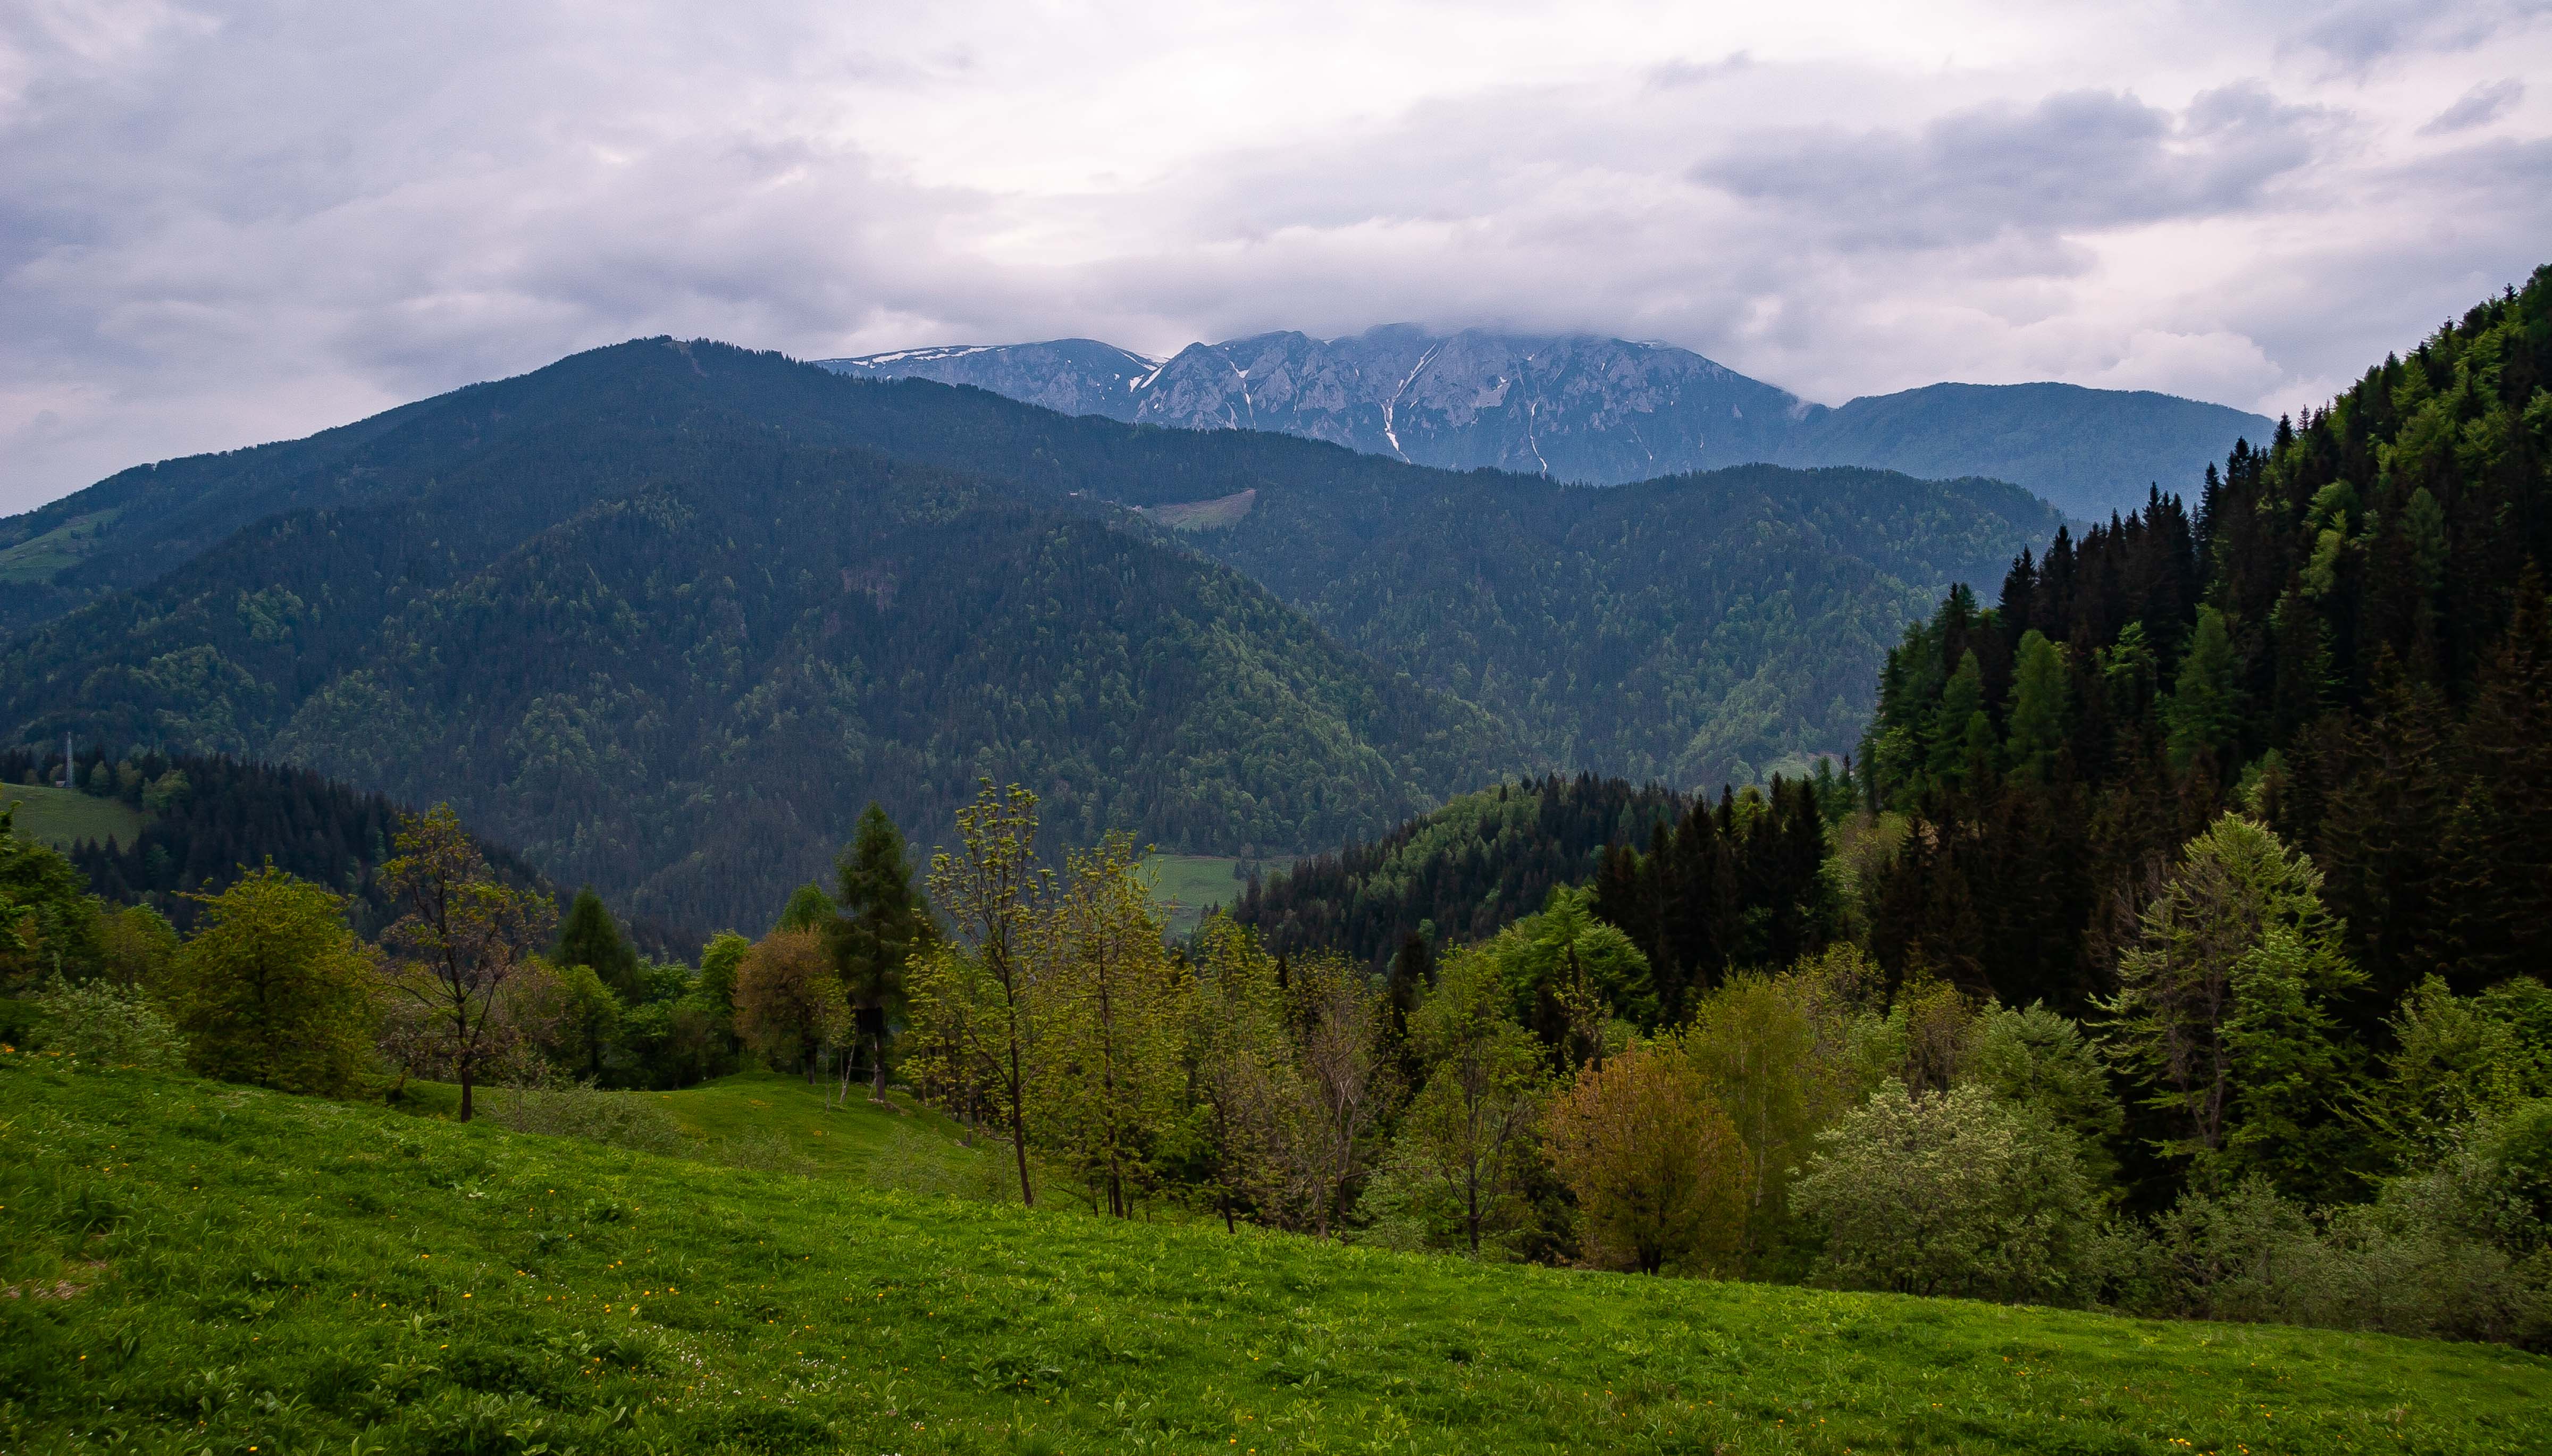 Slovenia, Crna Na Koroskem Prov, Landscape, 2006, IMG 8436